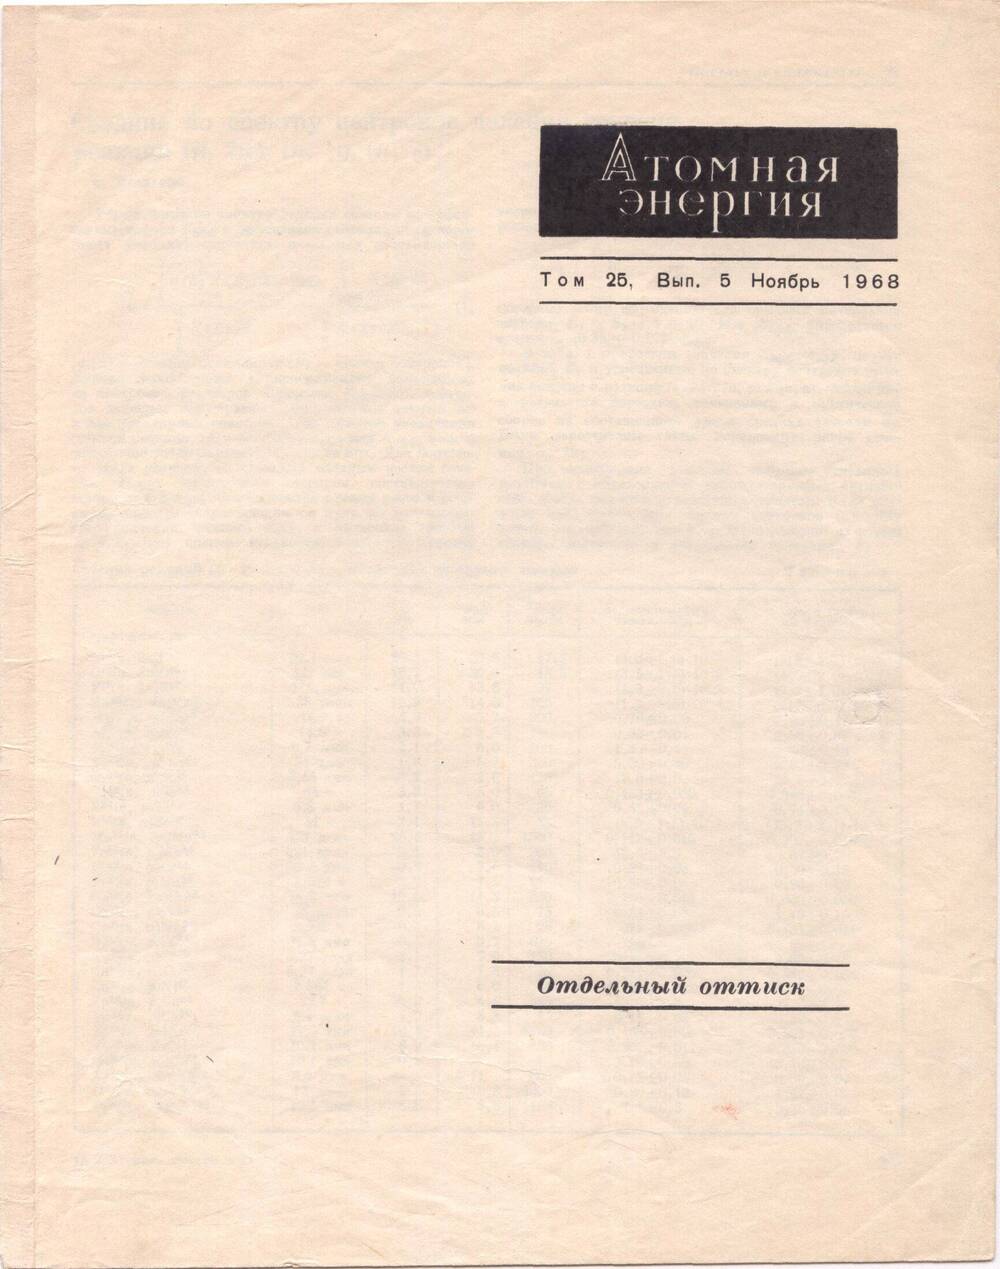 Отдельный оттиск. Атомная энергия. Том 25, выпуск 5, ноябрь 1968 г. Статья. Средние по спектру нейтронов деления сечения реакций. Автор: Ф.Х. Насыров (письмо в редакцию журнала).